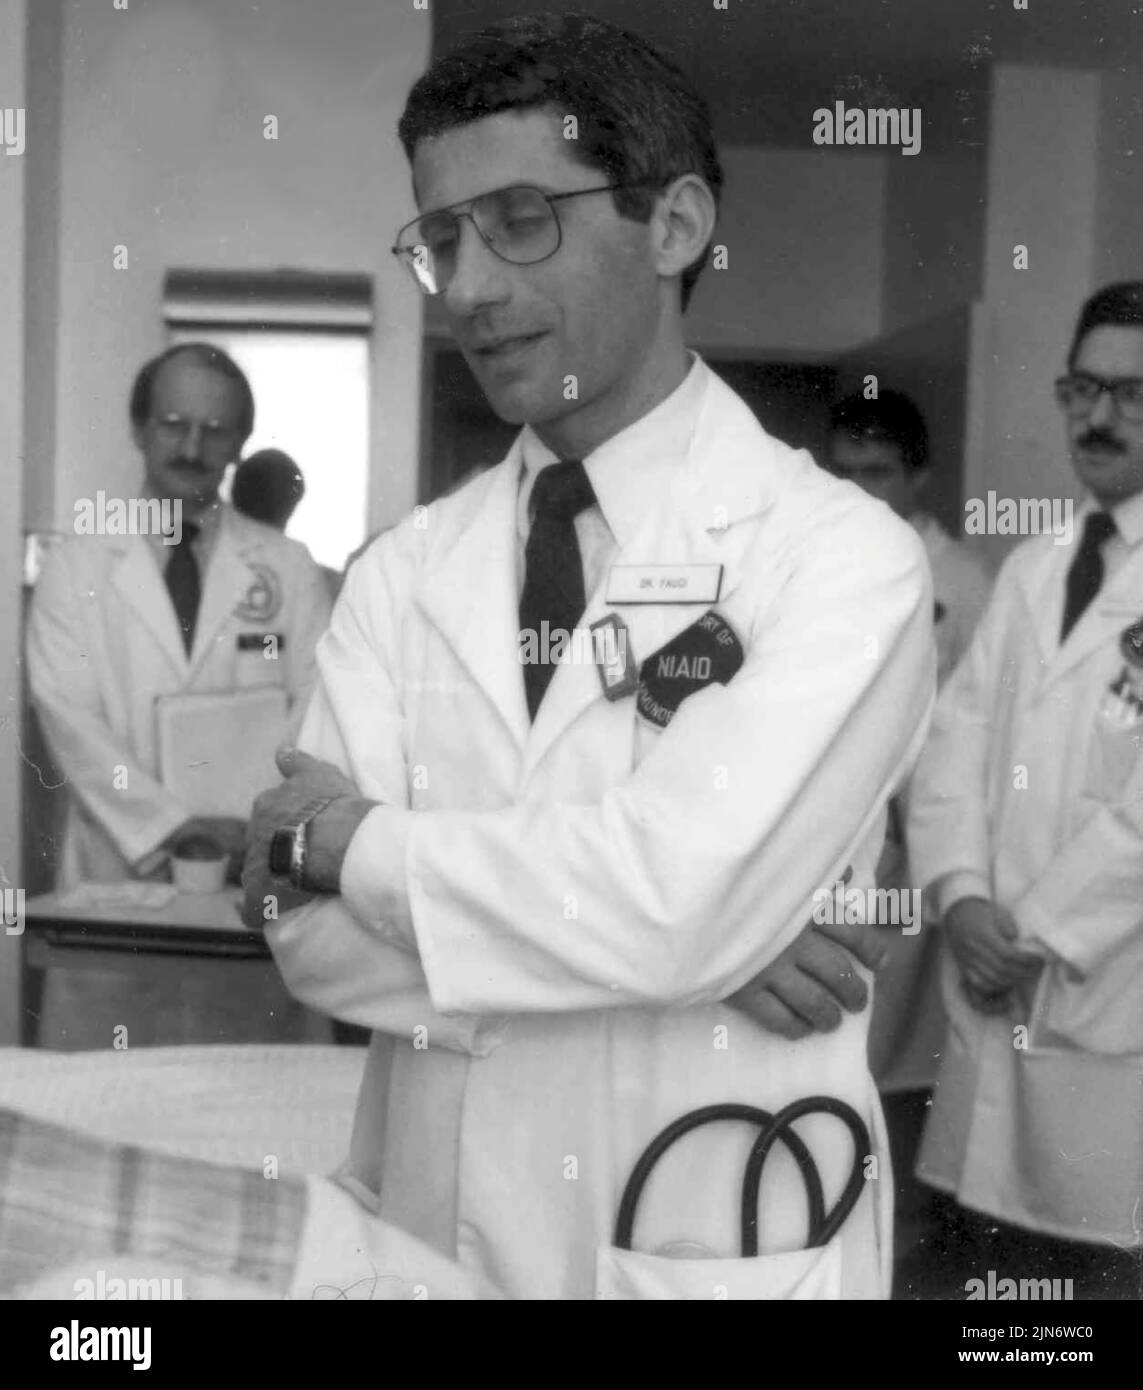 Anthony Fauci während der frühen Jahre der AIDS-Epidemie Dr. Anthony Fauci, der sich mit einem AIDS-Patienten beraten hat, 1987. Kredit: NIAID Stockfoto